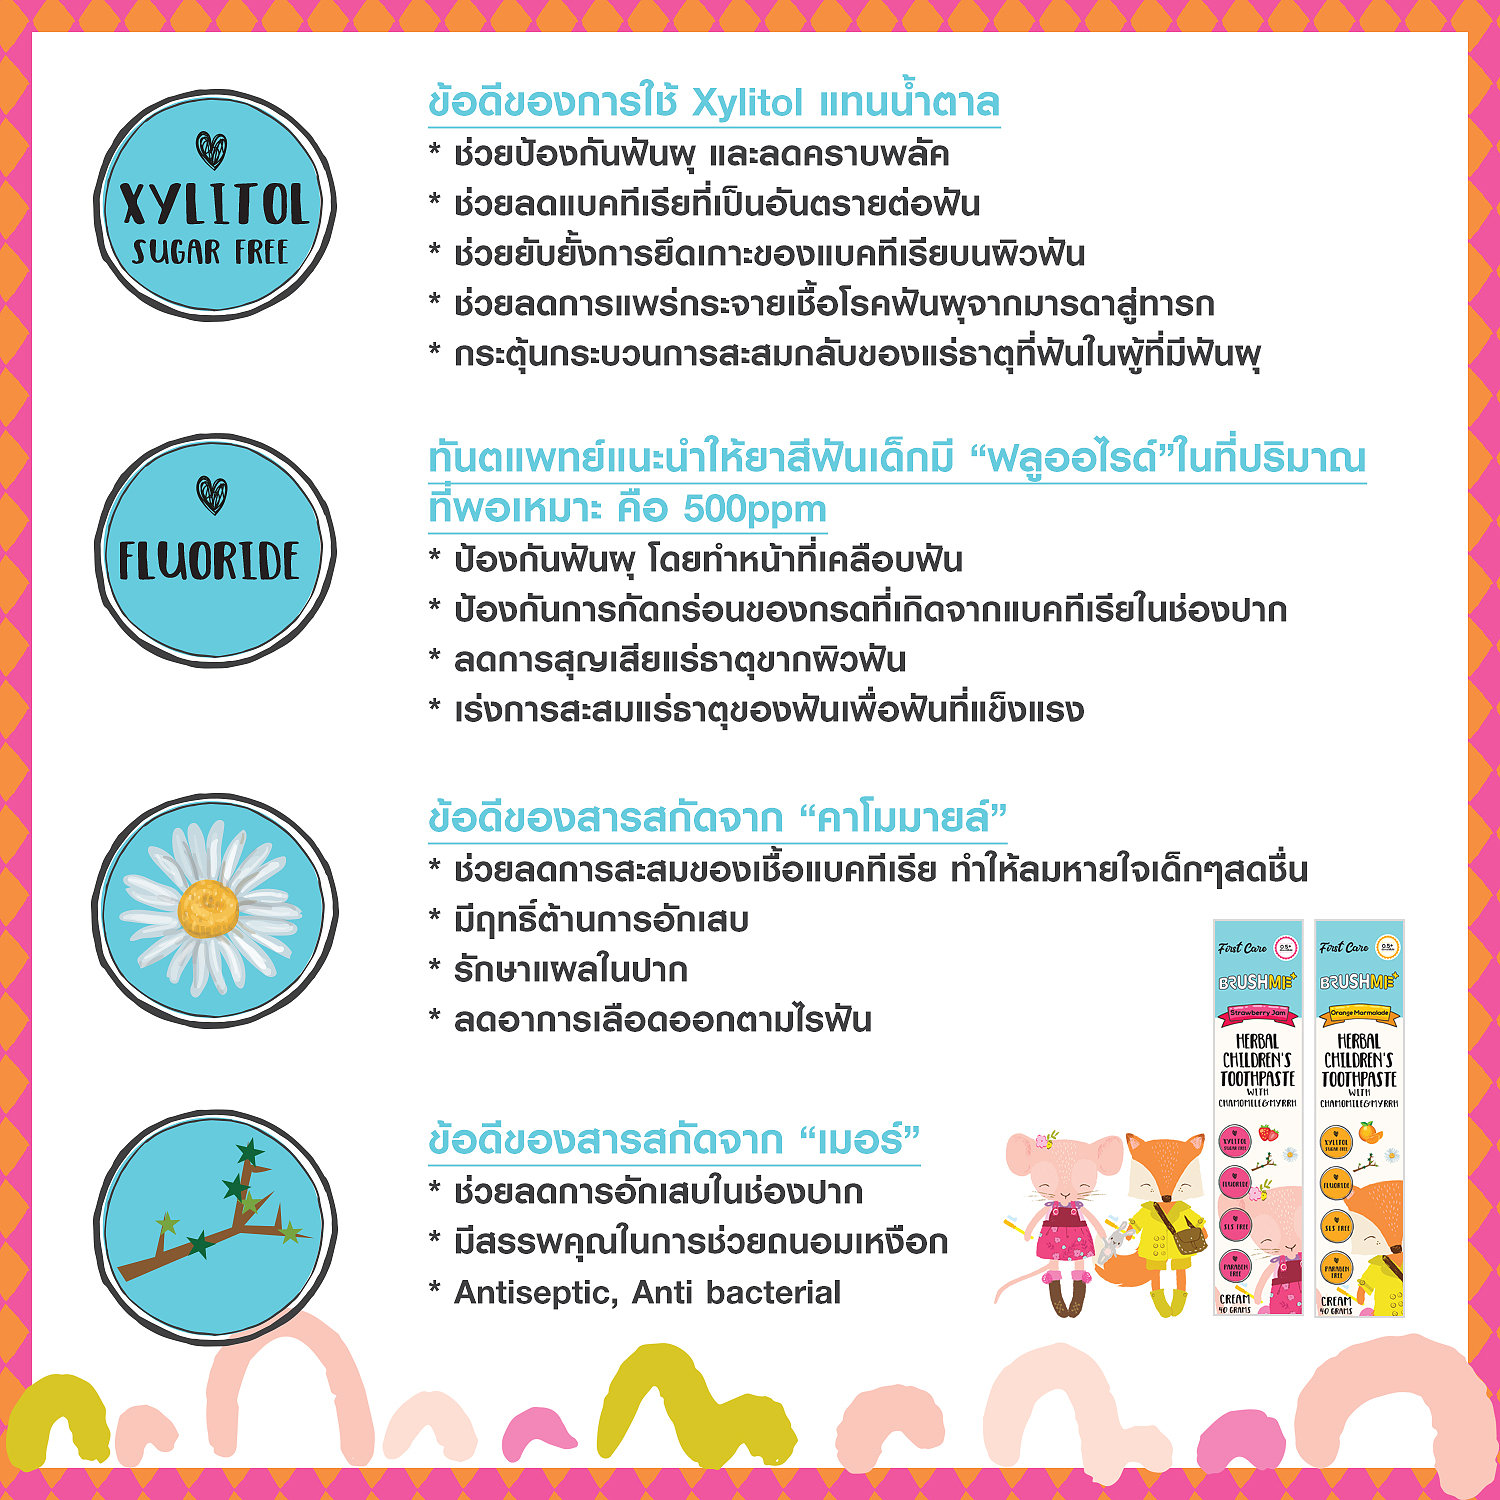 Тайская детская зубная паста со вкусом клубничного джема BRUSHME Herbal Children's Toothpaste 40 гр. тайланд